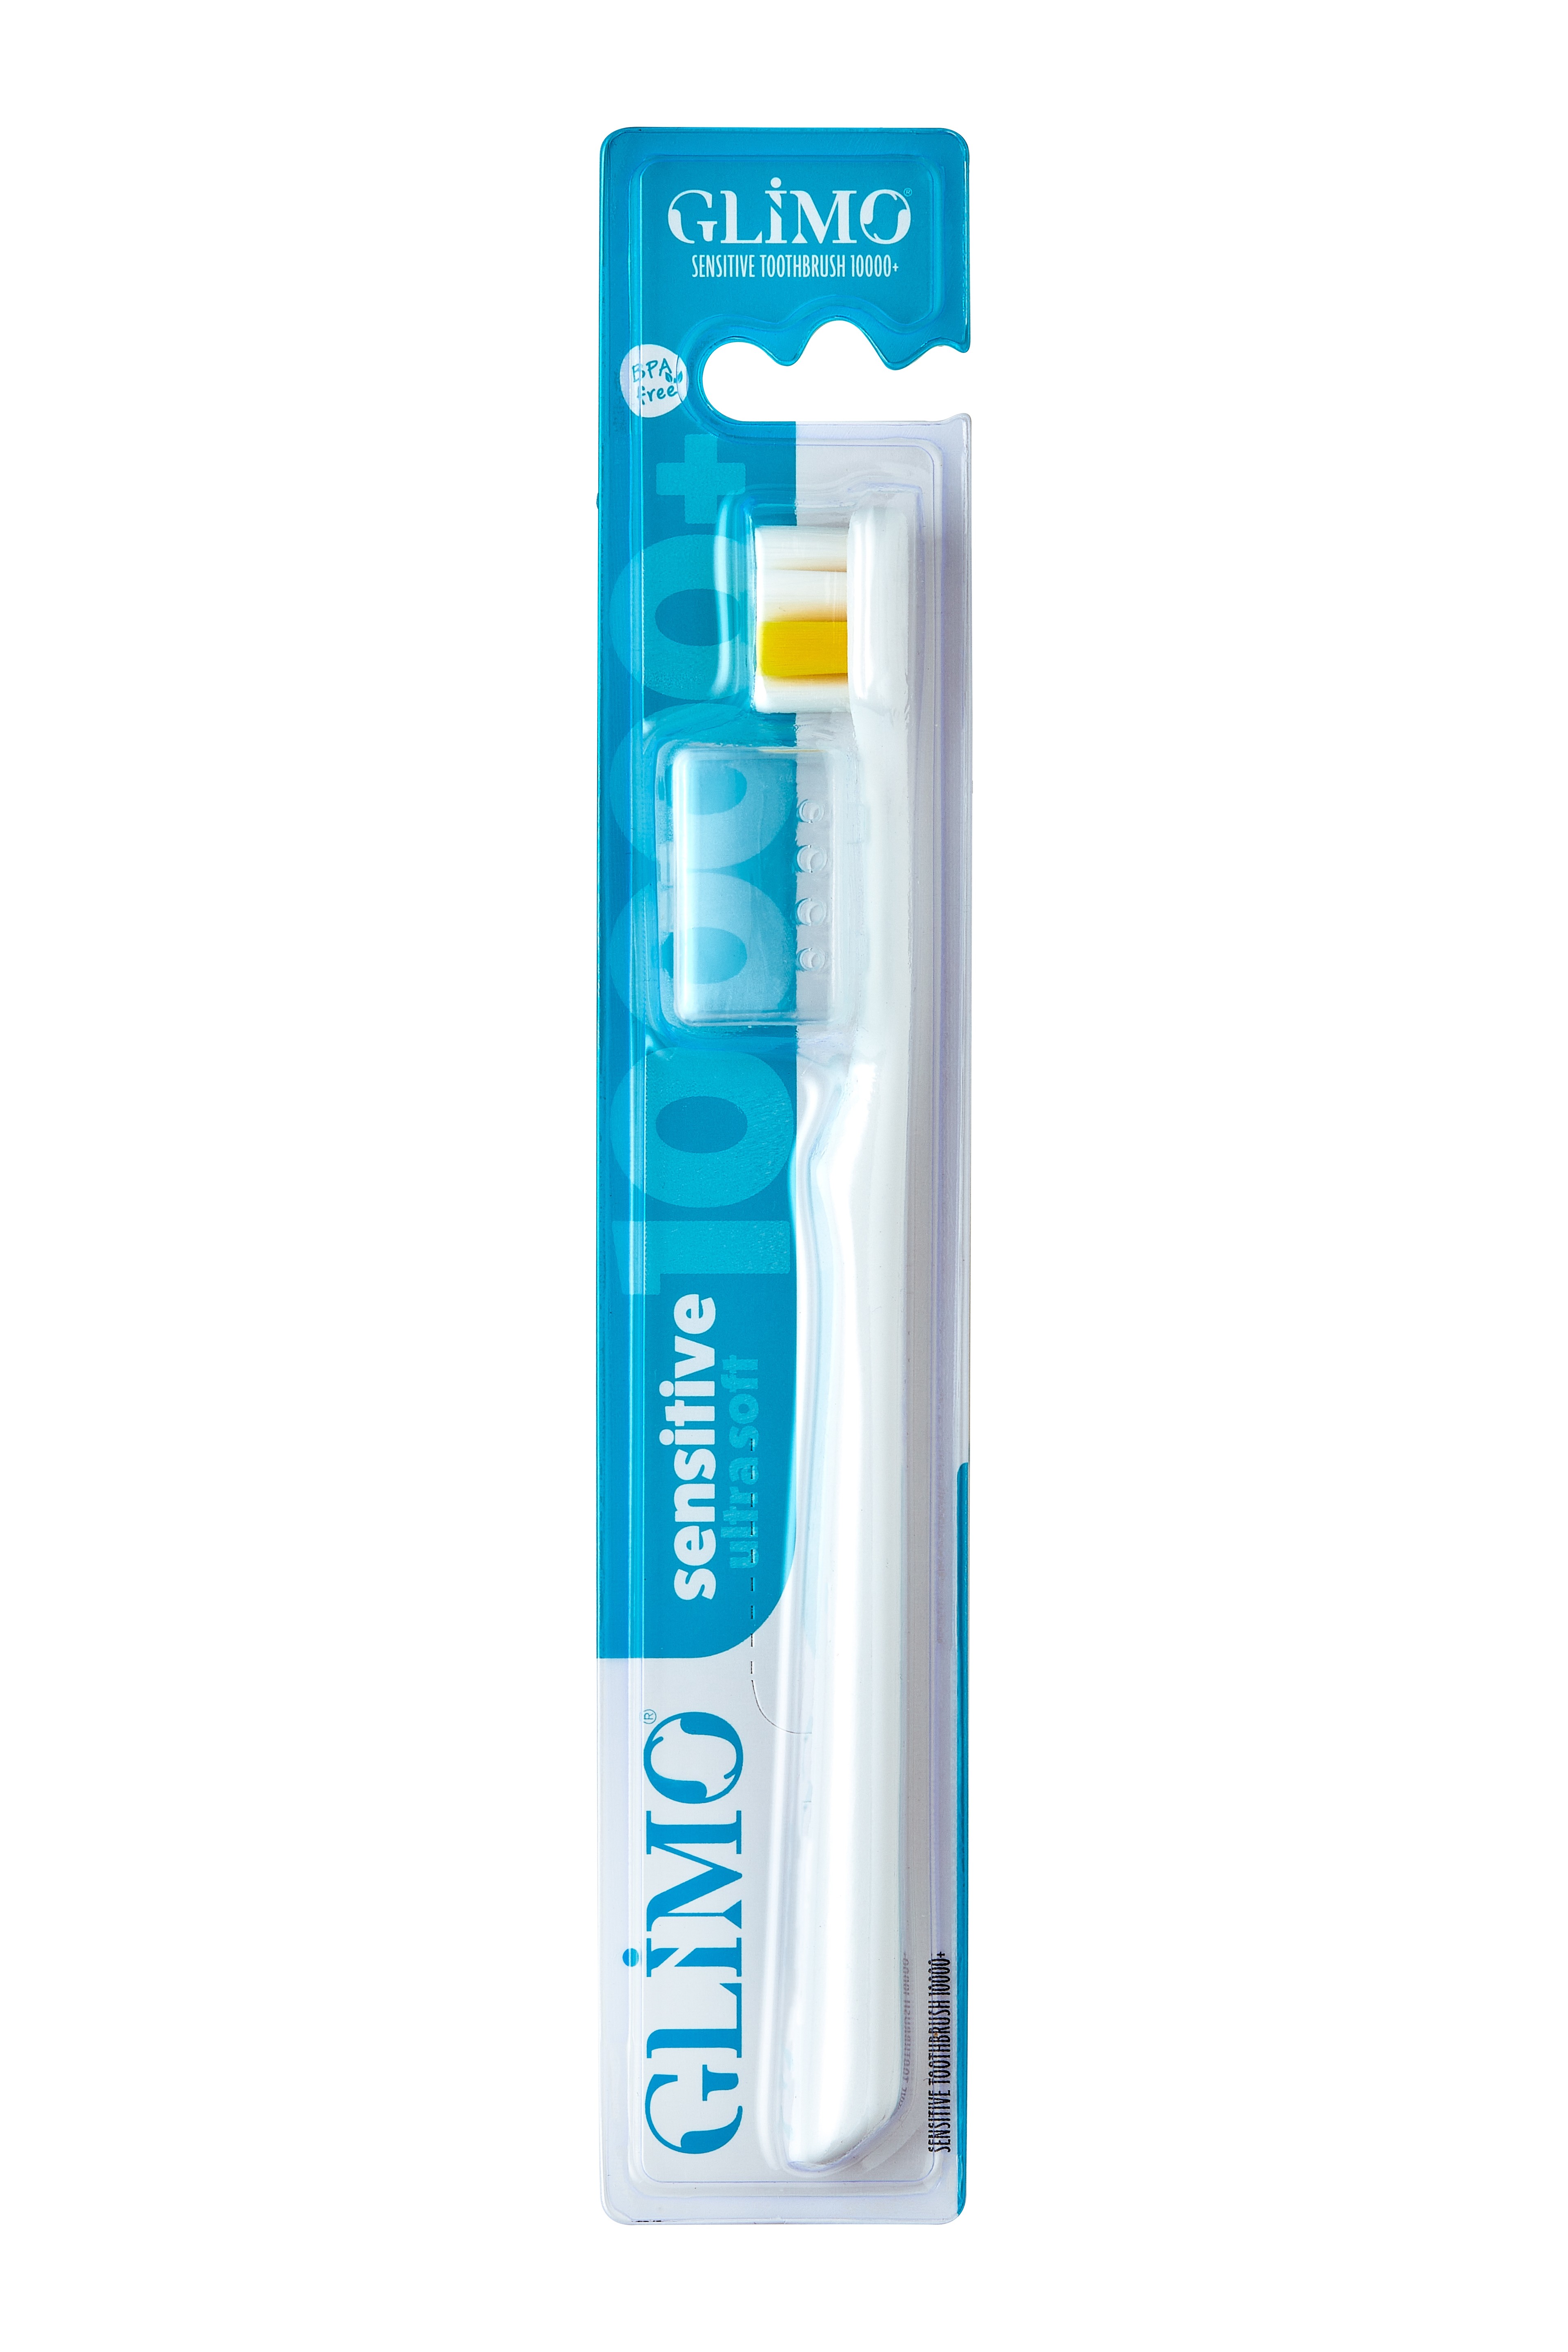 Glimo Sensitive Diş Fırçası 10000+ Ultra Soft